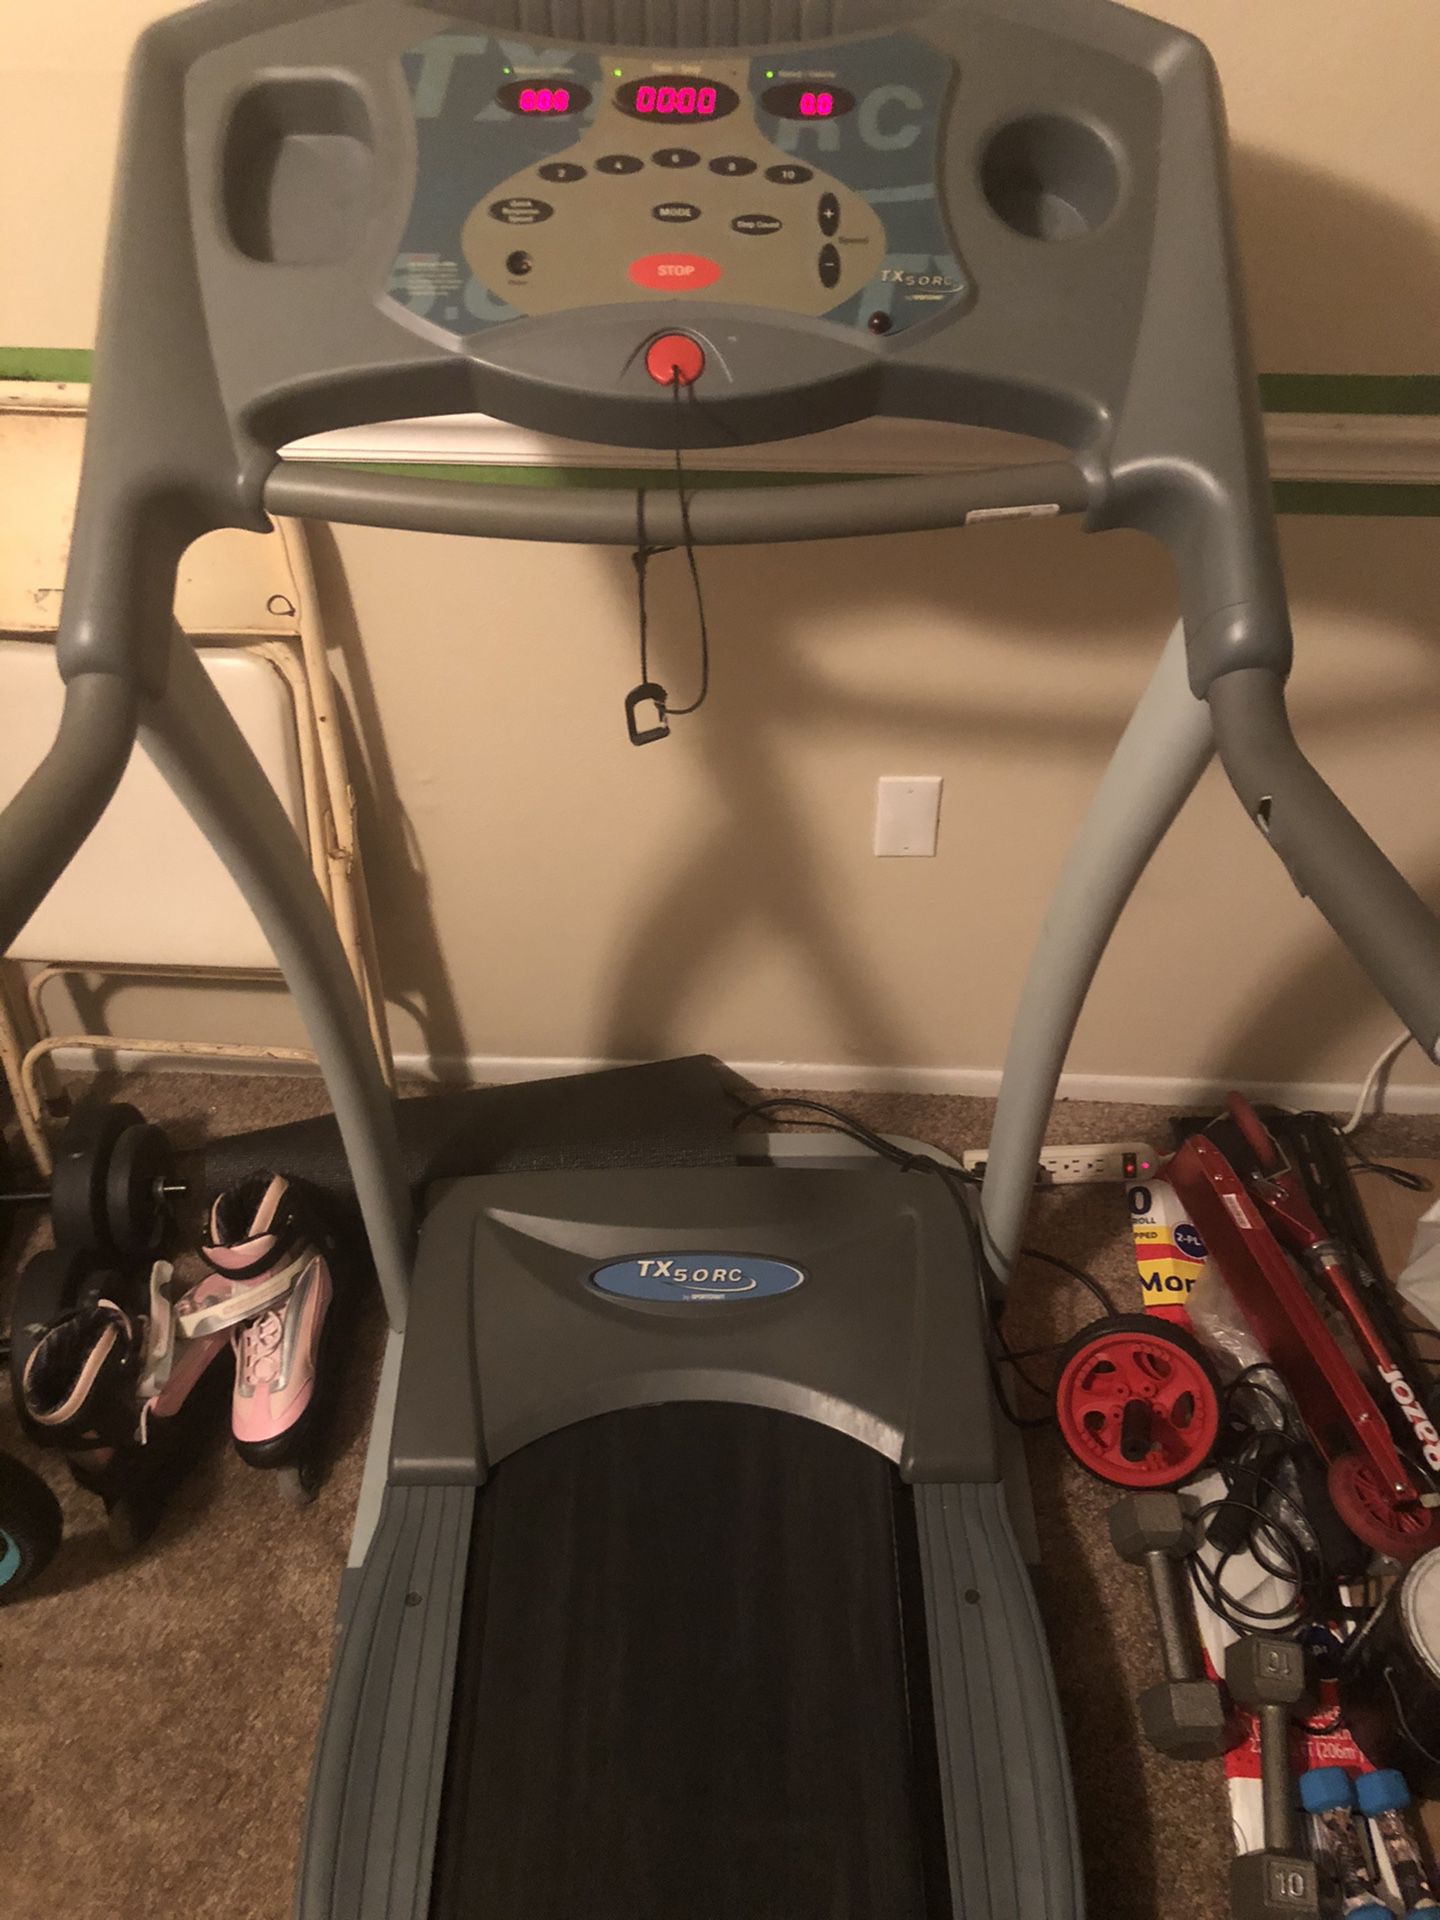 Treadmill (SportsCraft)